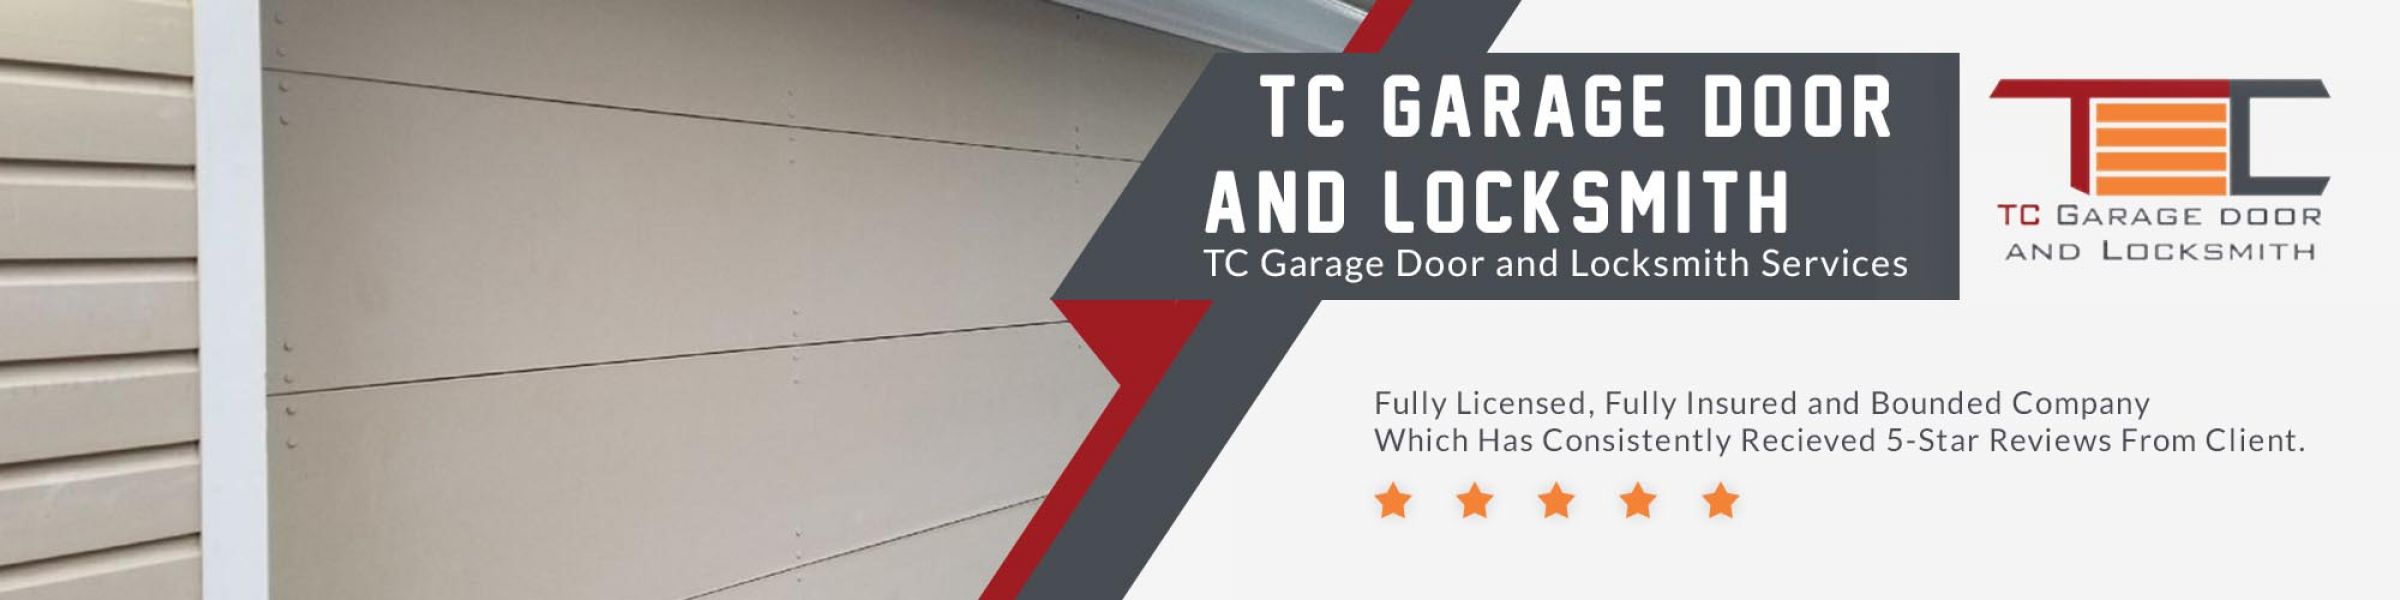 TC Garage Door & Locksmith